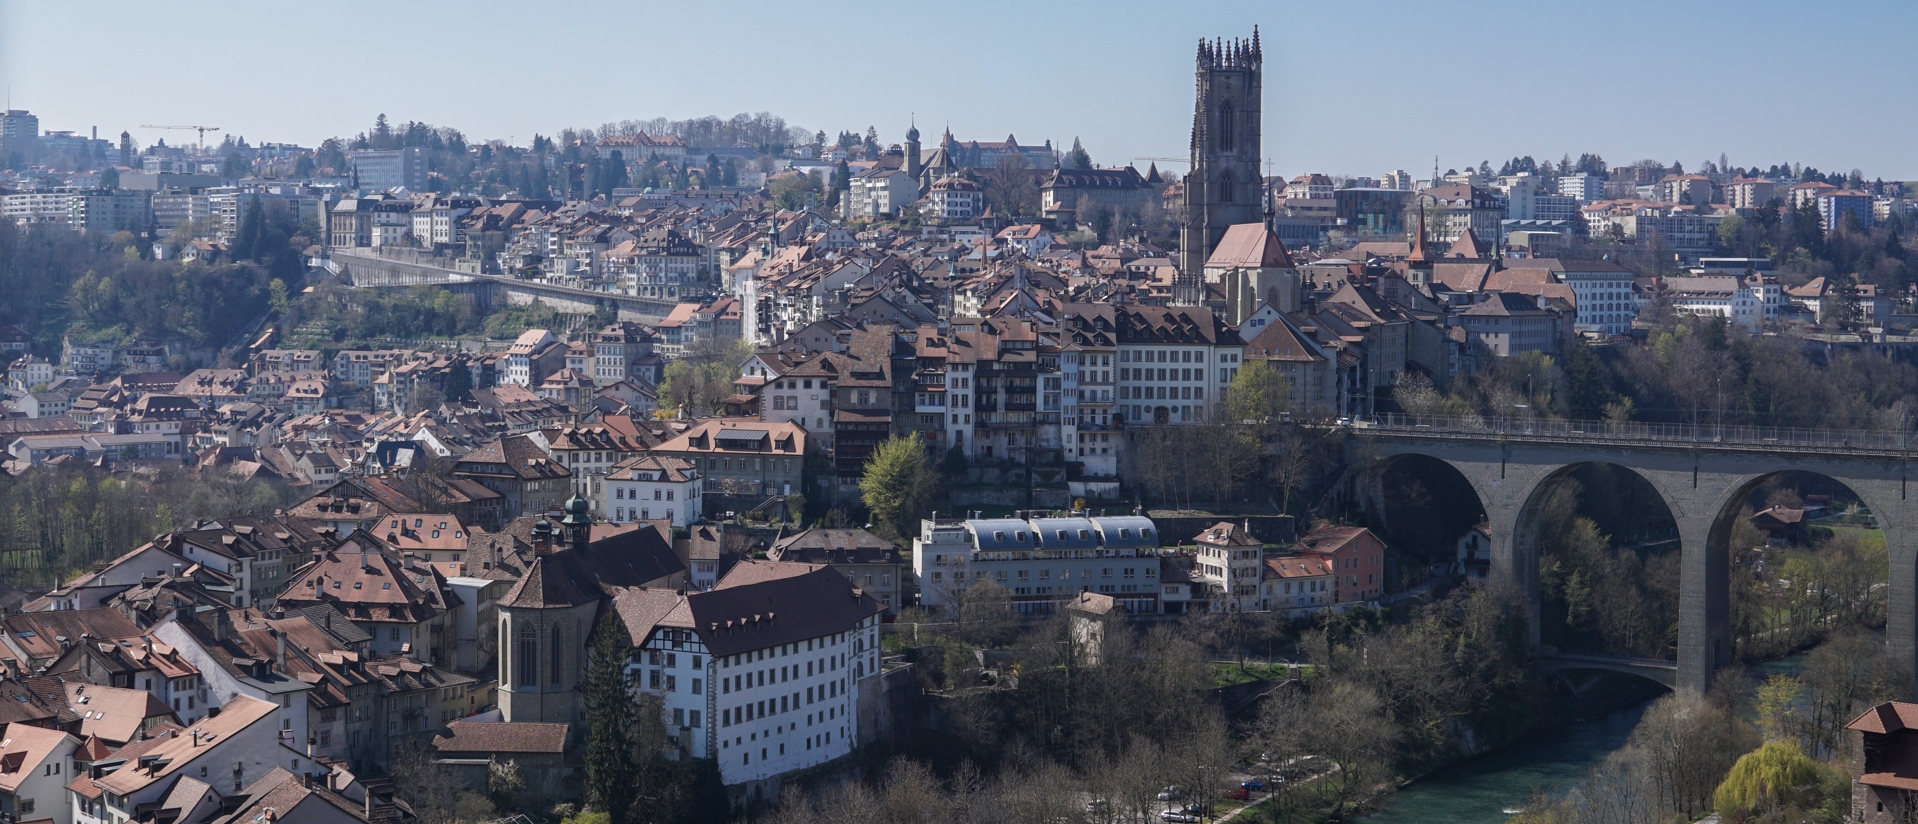 Fribourg et ses nombreux clochers qui dessinent le paysage urbain | © Maurice Page